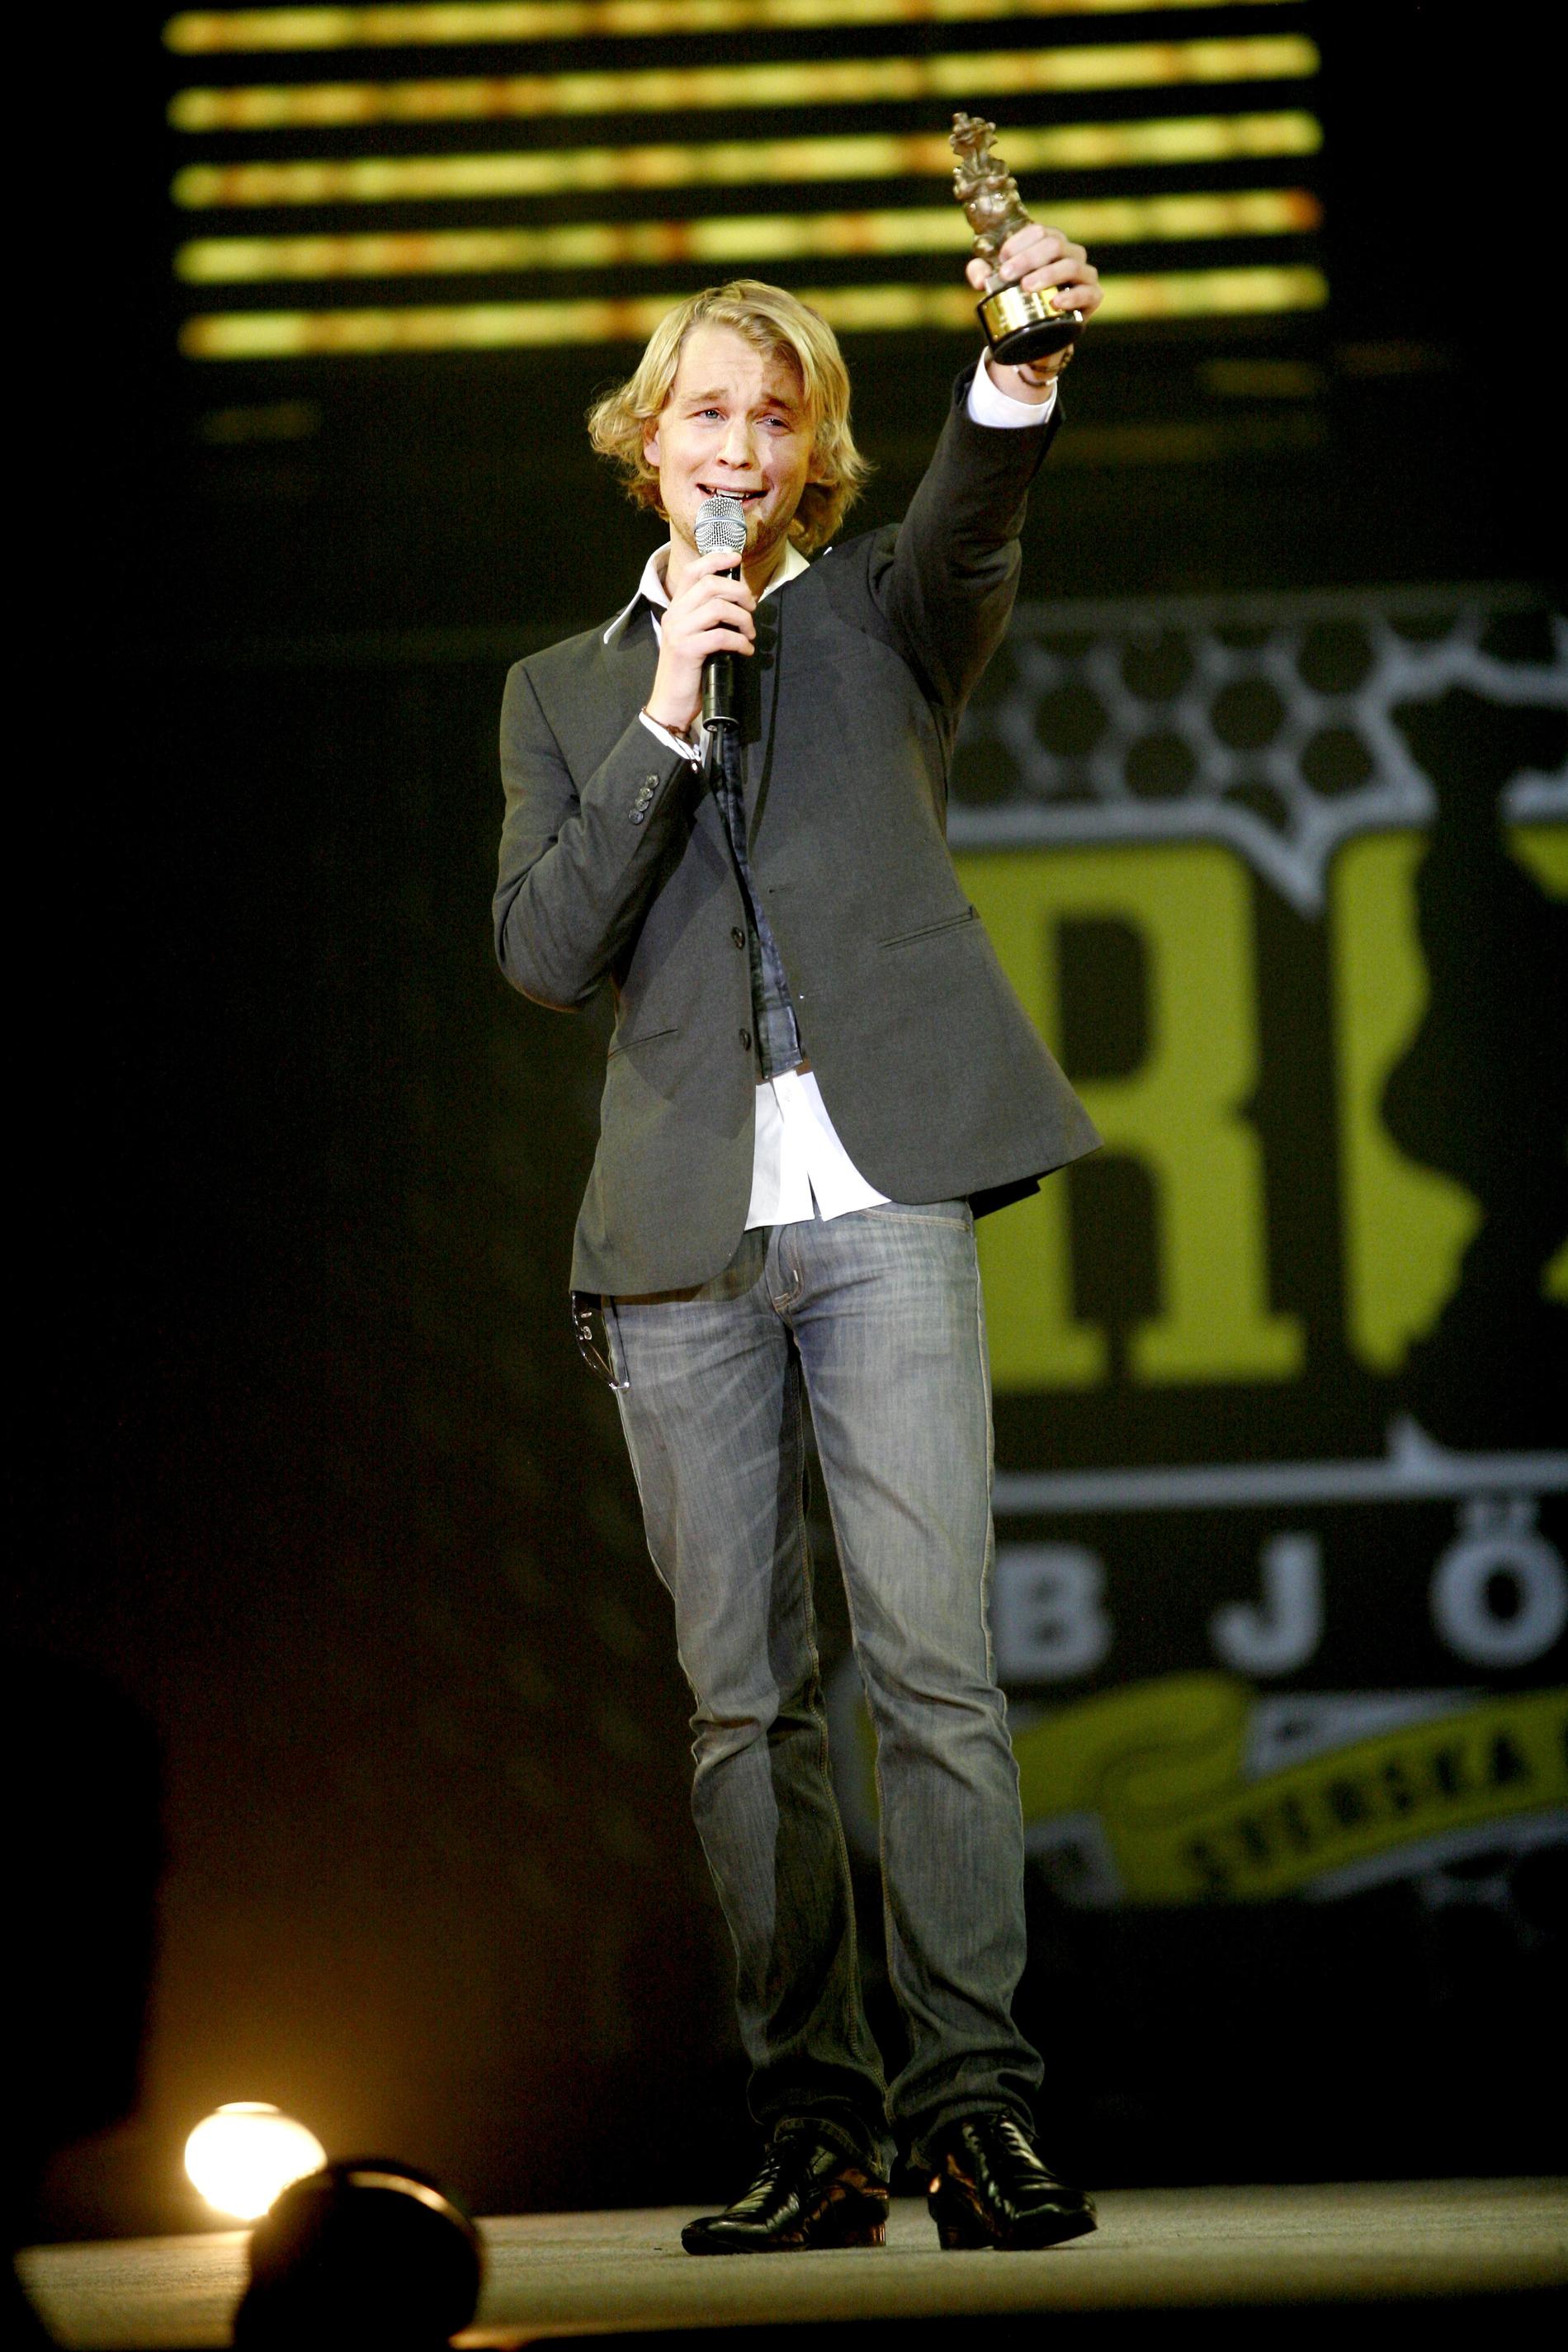 Blivande humorstjärna 2008 när Björn Gustafsson underhöll och gjorde succé på Rockbjörnengalan i Hovet var han fortfarande en nykomling.